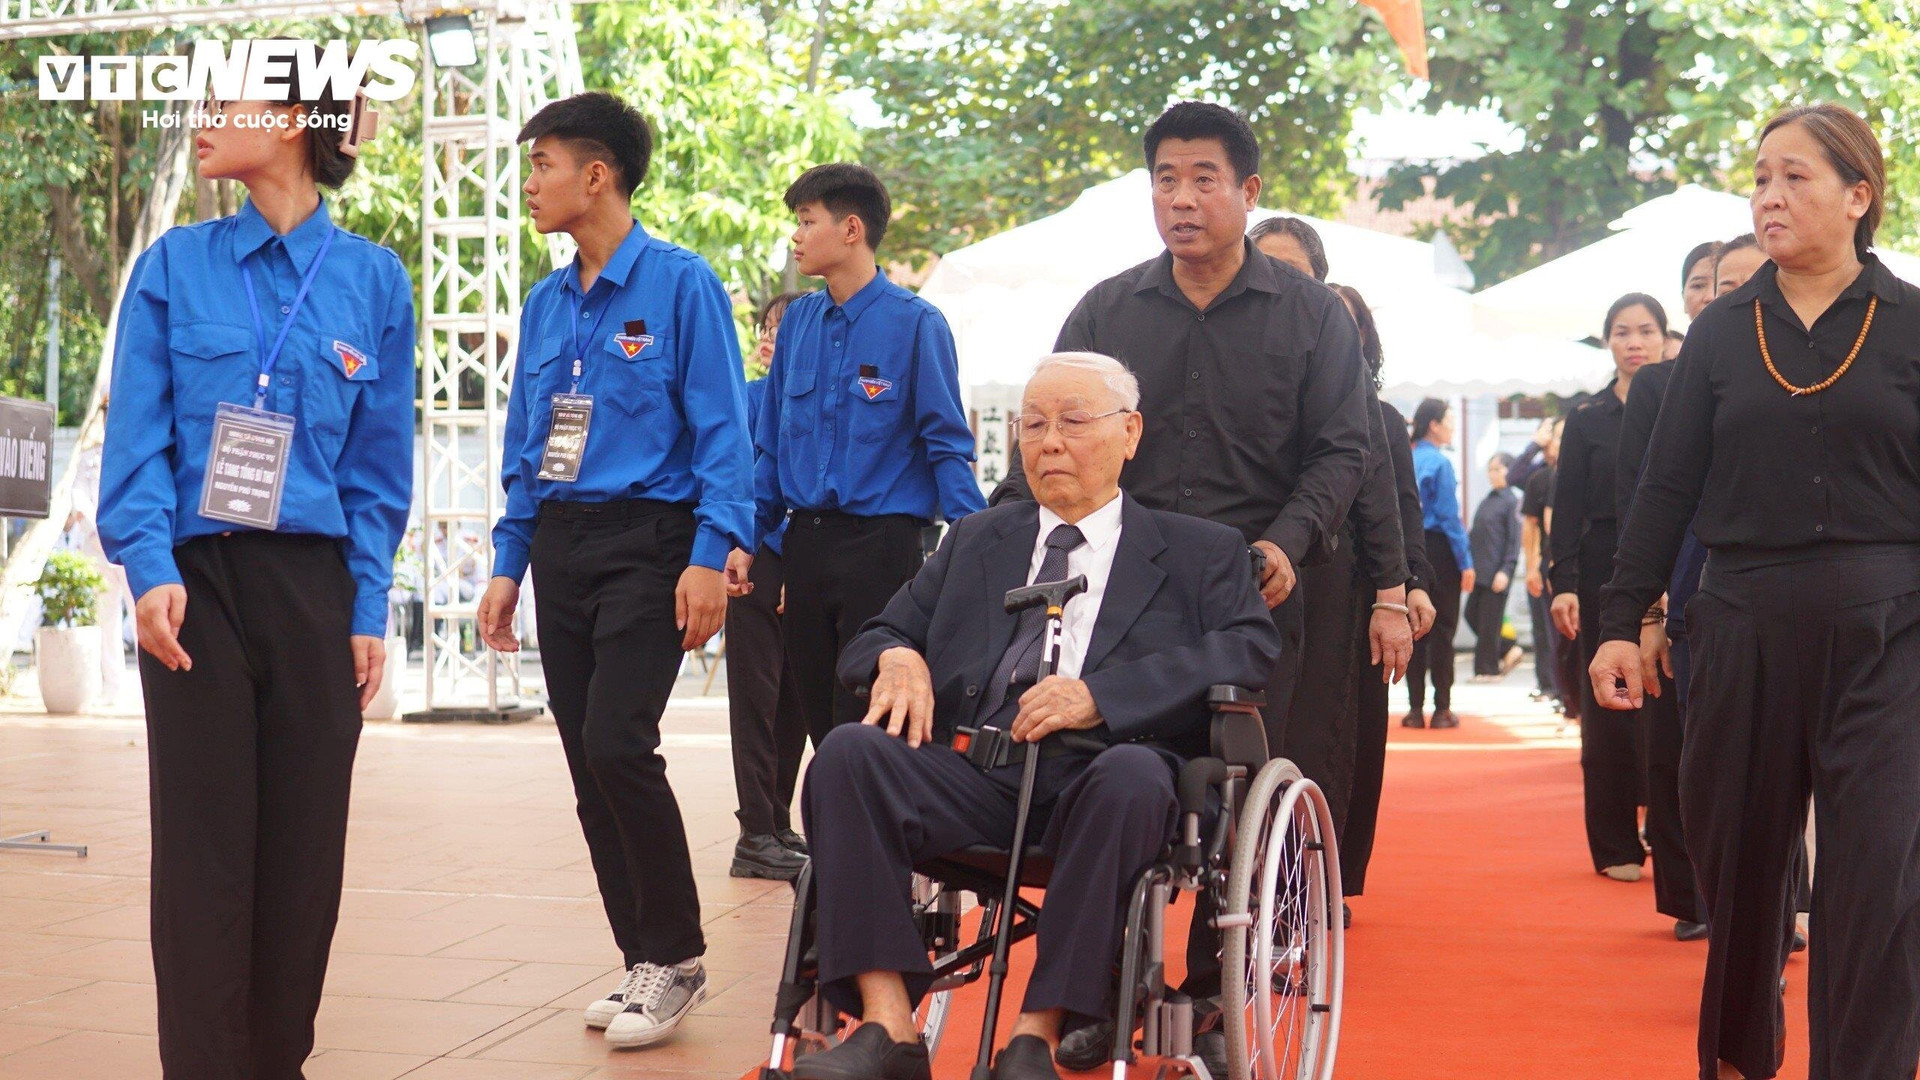 Ông Nguyễn Trọng Vĩnh, thầy giáo của Tổng Bí thư Nguyễn Phú Trọng được người thân đưa tới viếng học trò tại quê nhà xã Đông Hội.